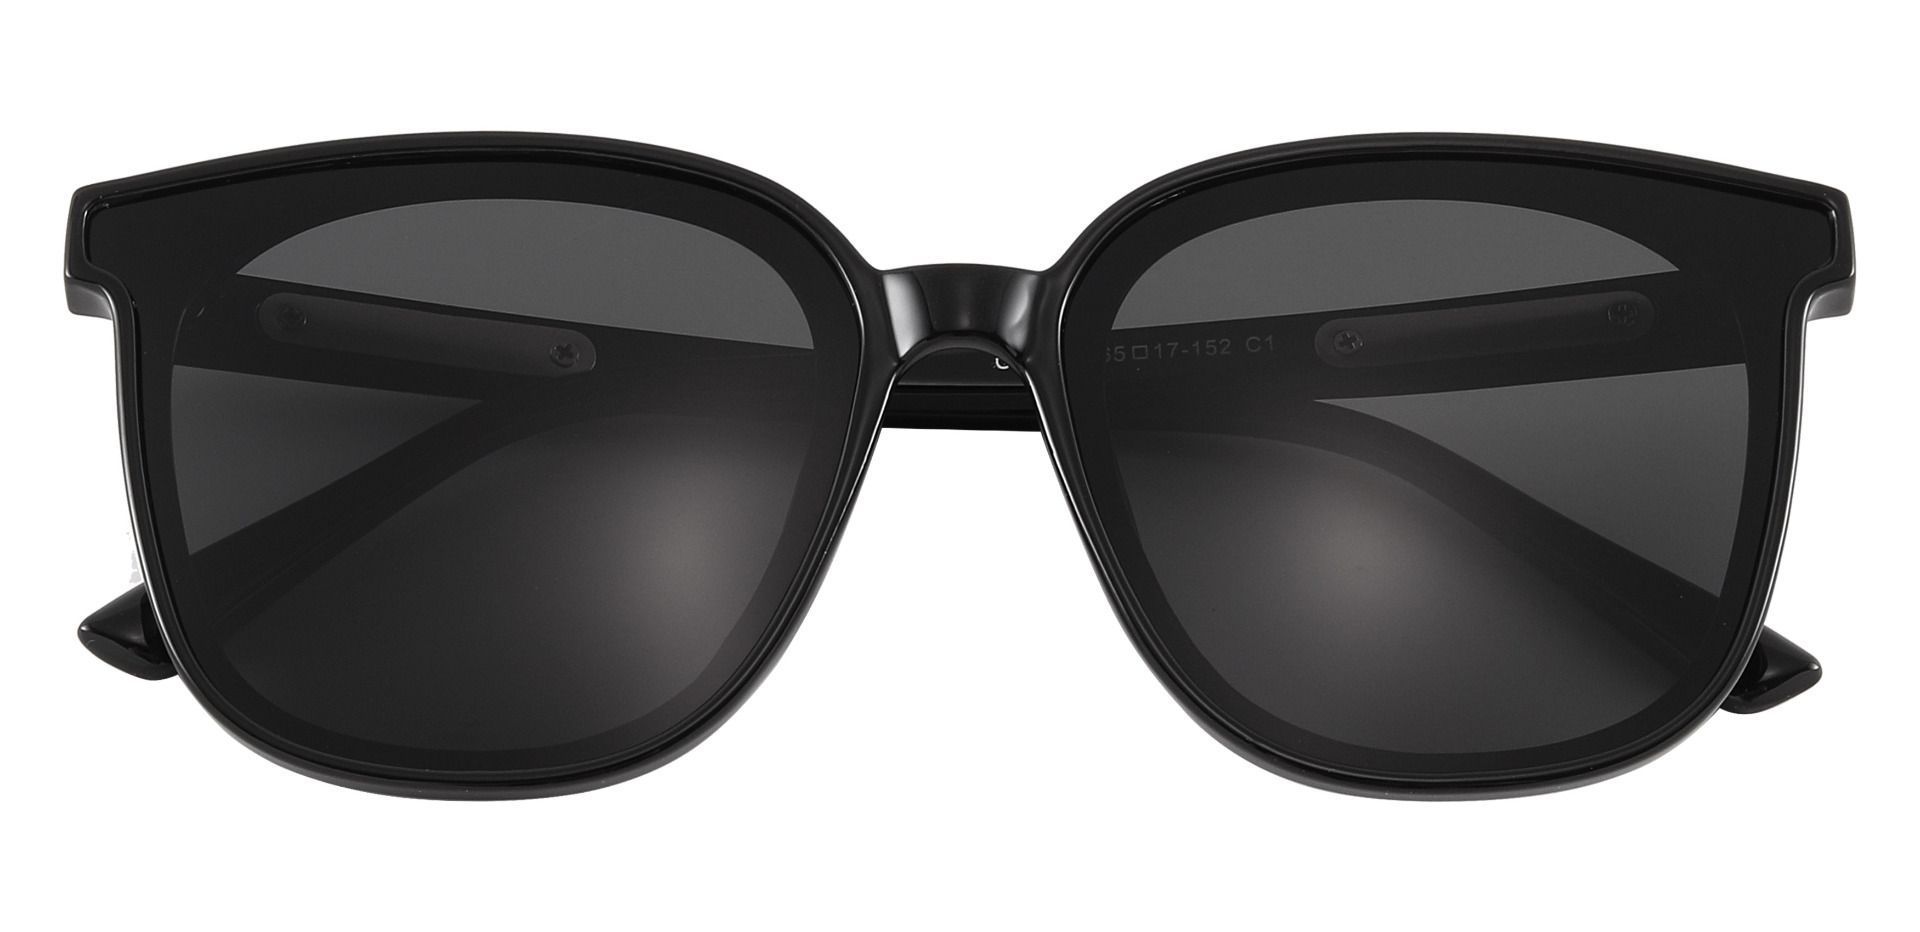 Fantasia Square Black Non-Rx Sunglasses